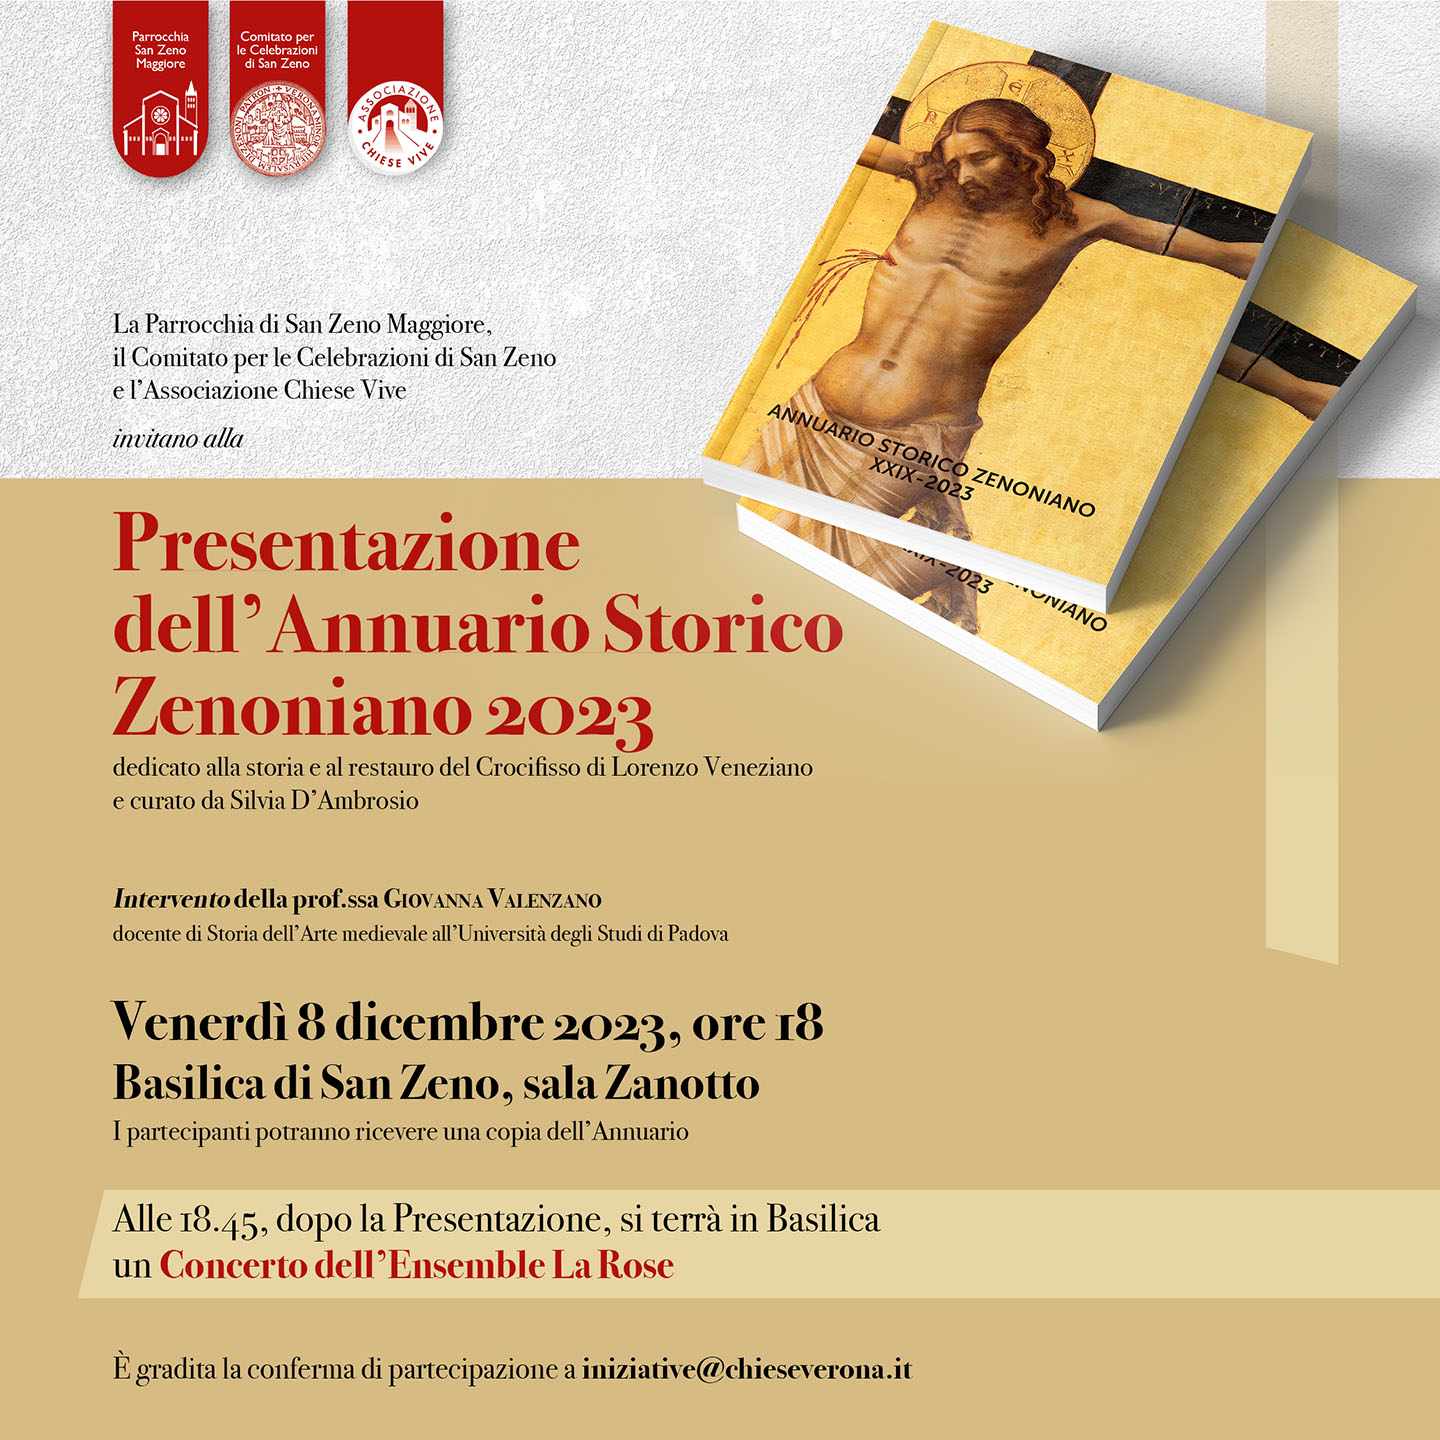 Annuario Storico Zenoniano 2023 sul Crocifisso di Lorenzo Veneziano - Chiese Vive - Chiese Verona